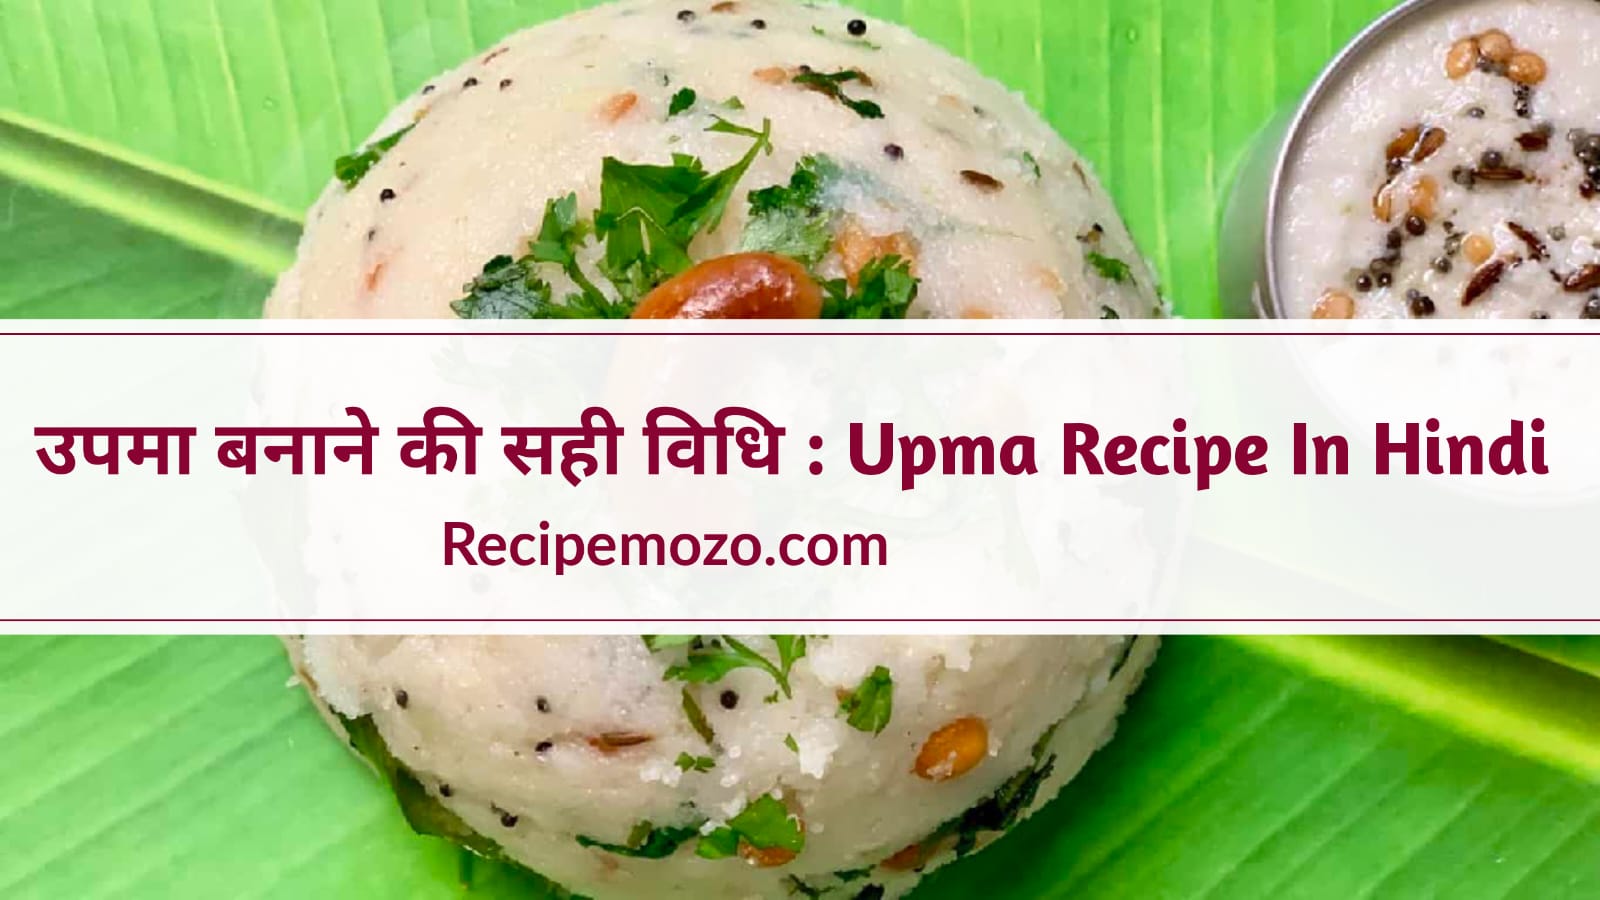 Upma Recipe In Hindi